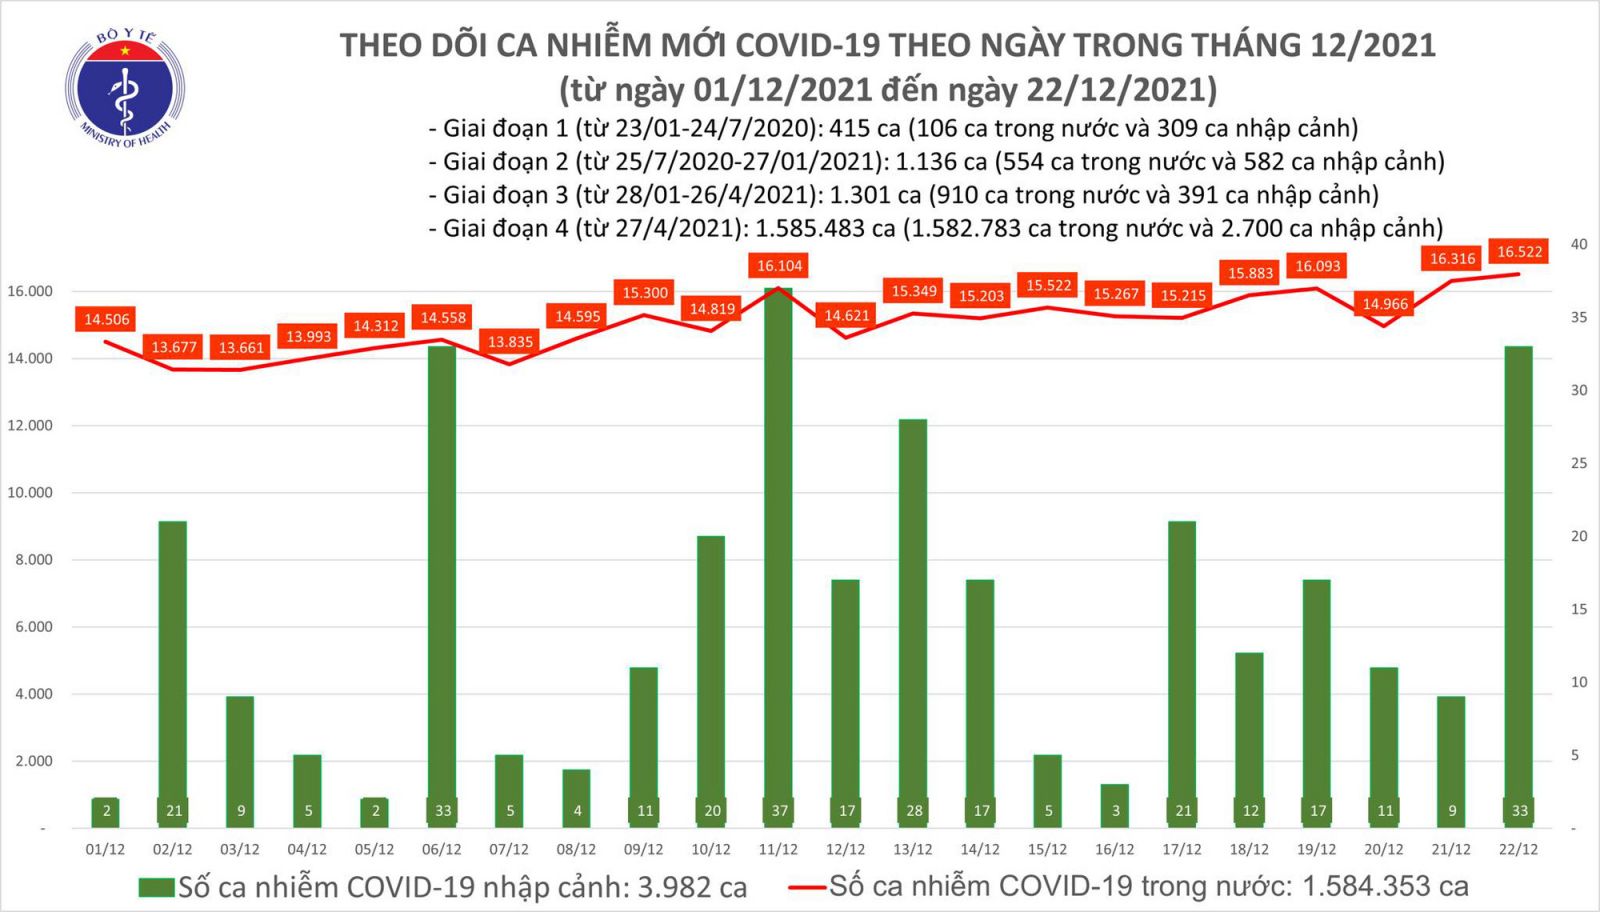 Ngày 22/12: Có 16.555 ca COVID-19, Hà Nội đã 4 ngày liên tục số mắc nhiều nhất cả nước